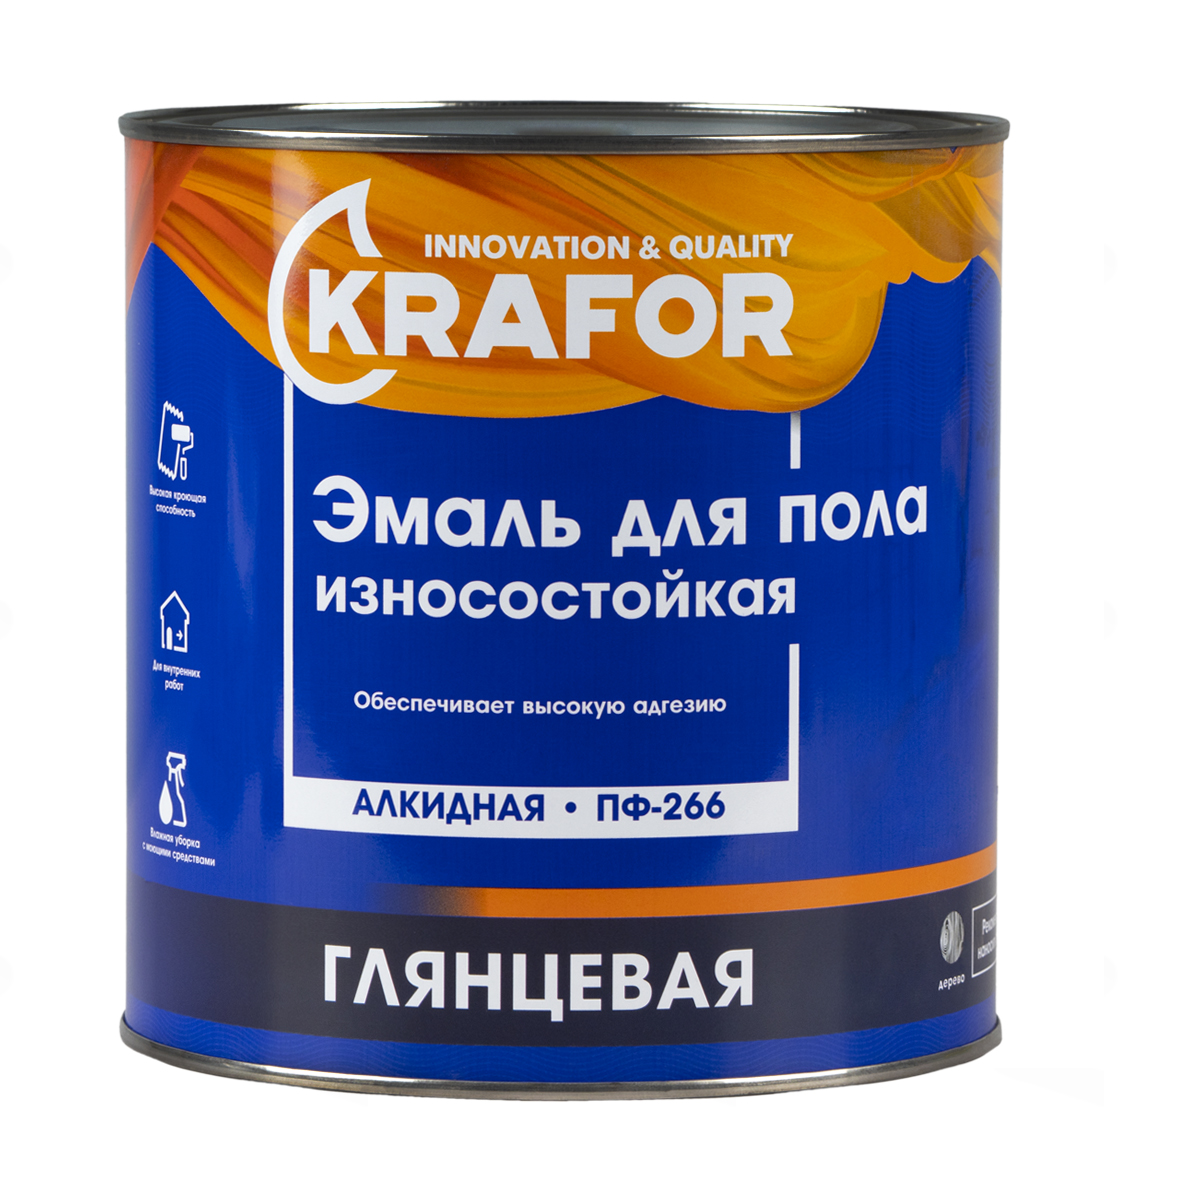 Эмаль ПФ-266 для пола Krafor, алкидная, глянцевая, 2,7 кг, желто-коричневая эмаль для пола акриловая эксперт полуглянцевая коричневая 1кг